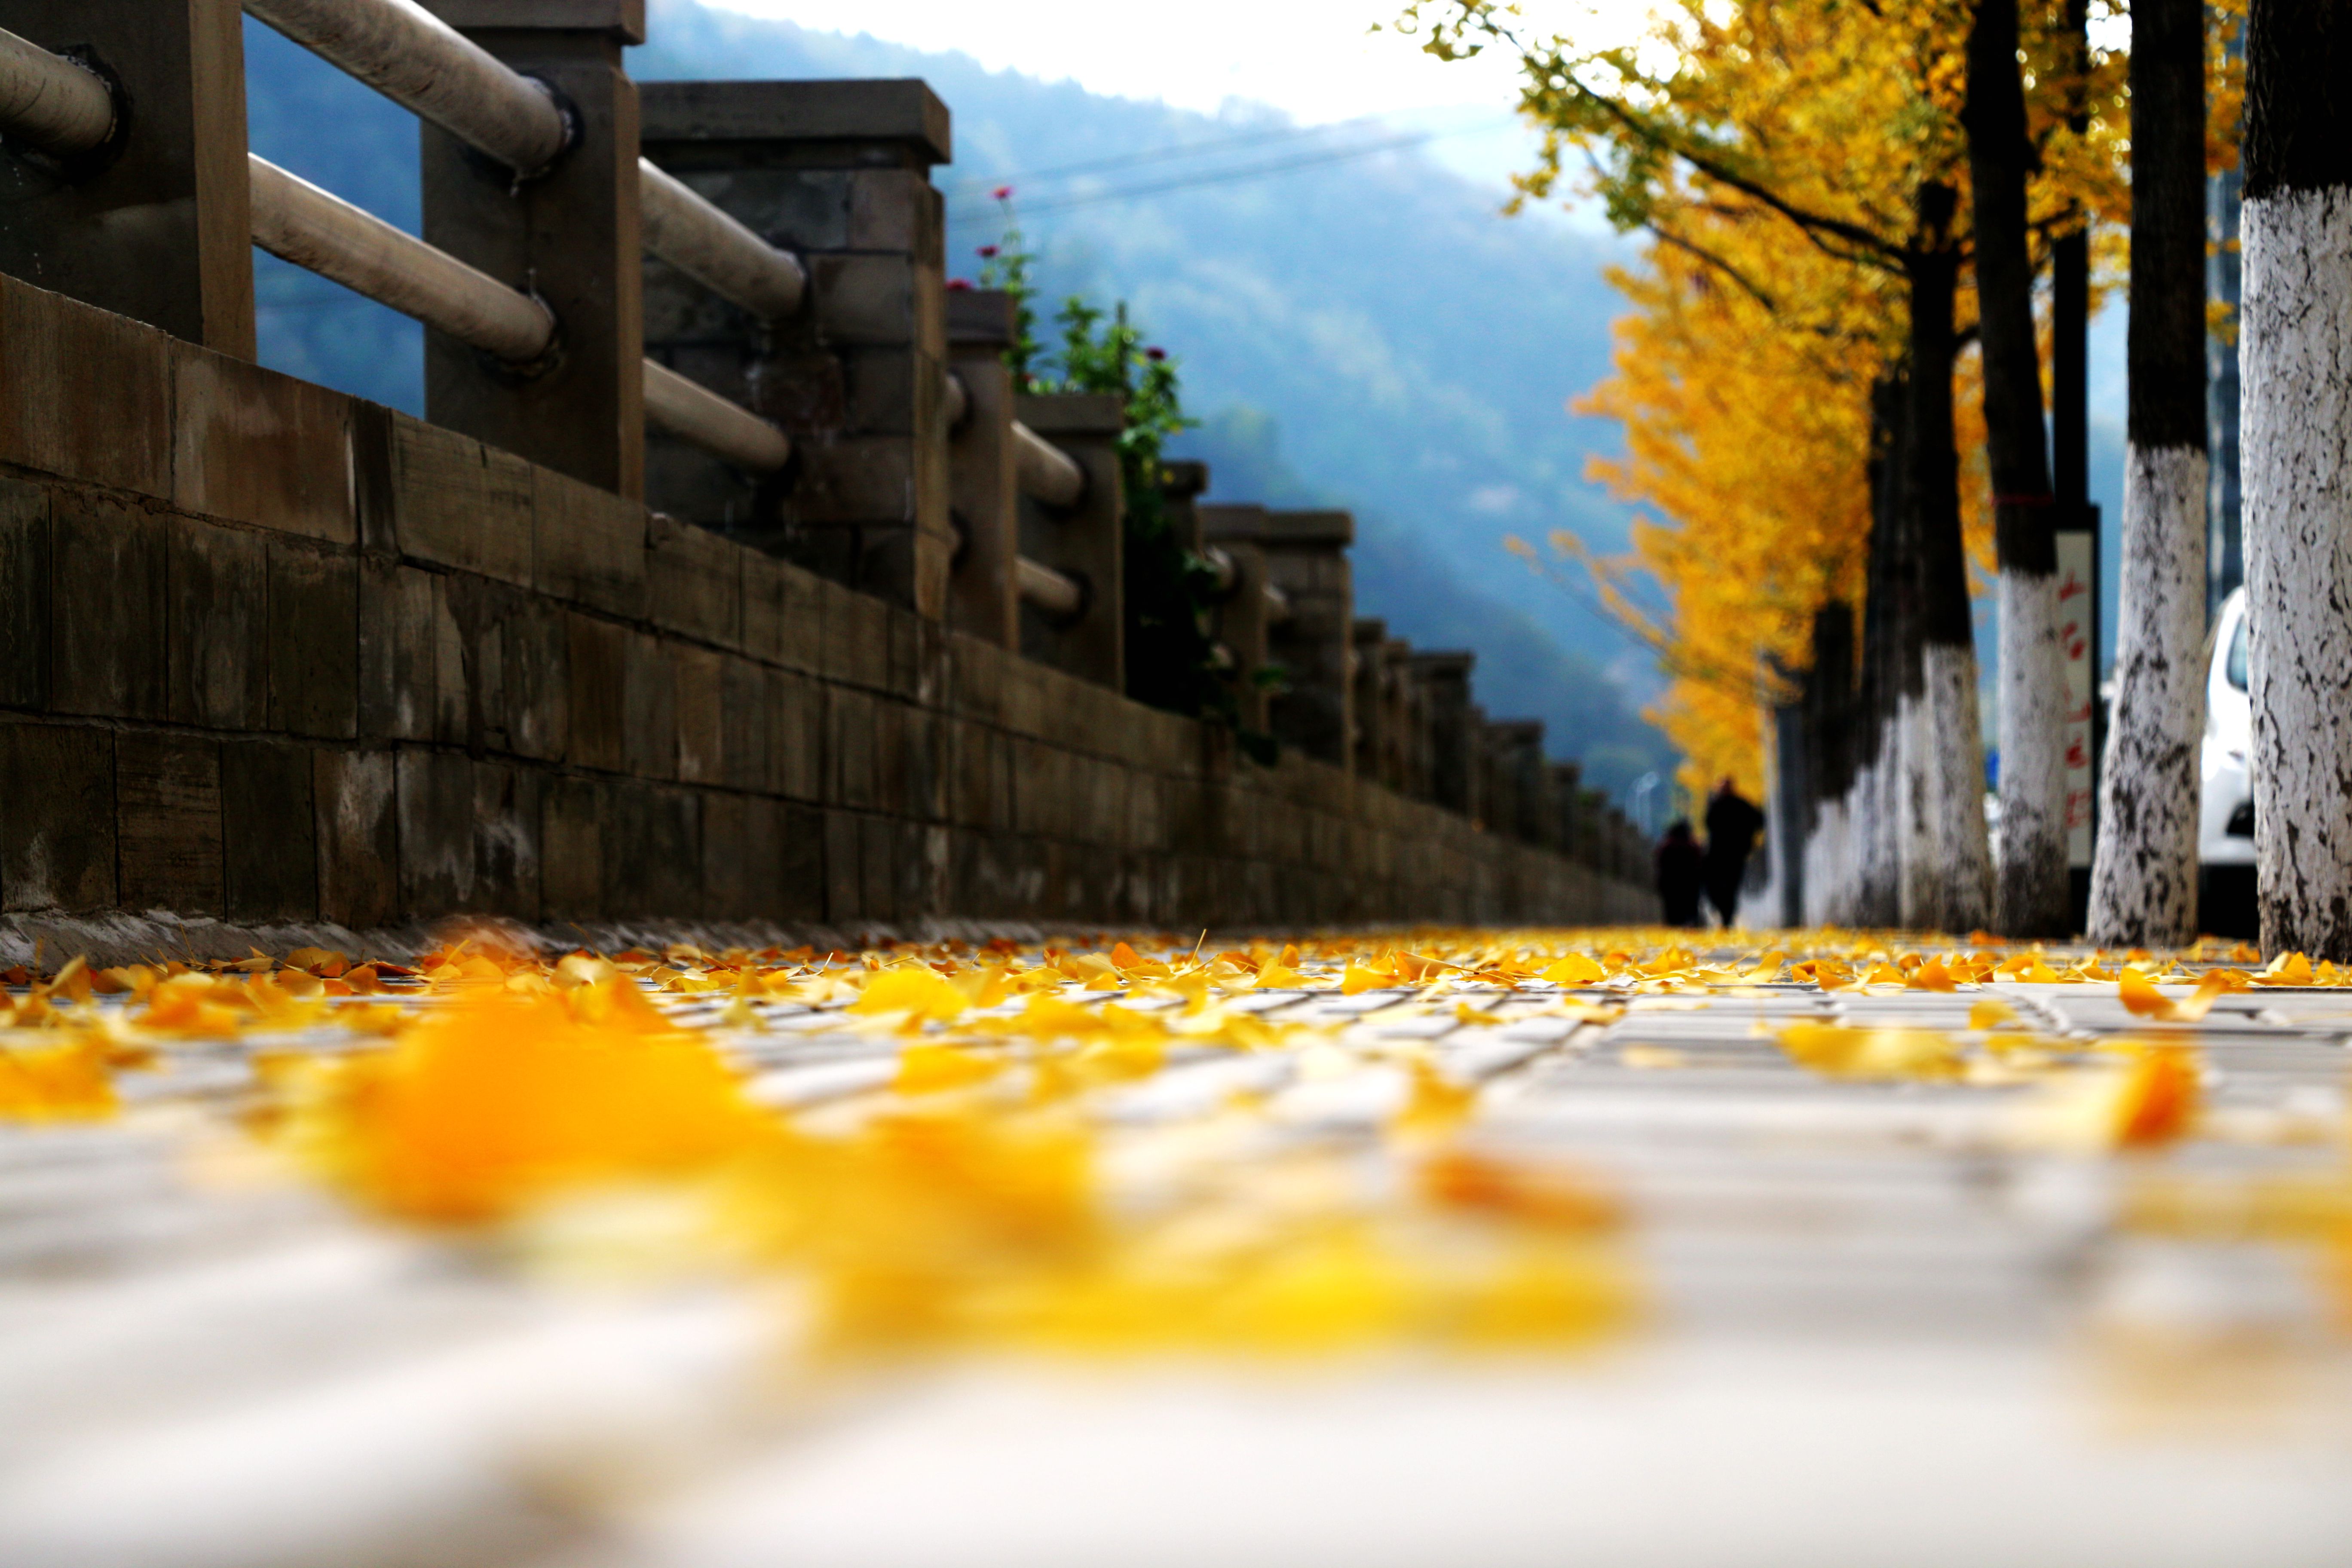 南京的秋天真好 即便一条小路也让人怦然心动|赝能隙|南京理工大学_凤凰旅游